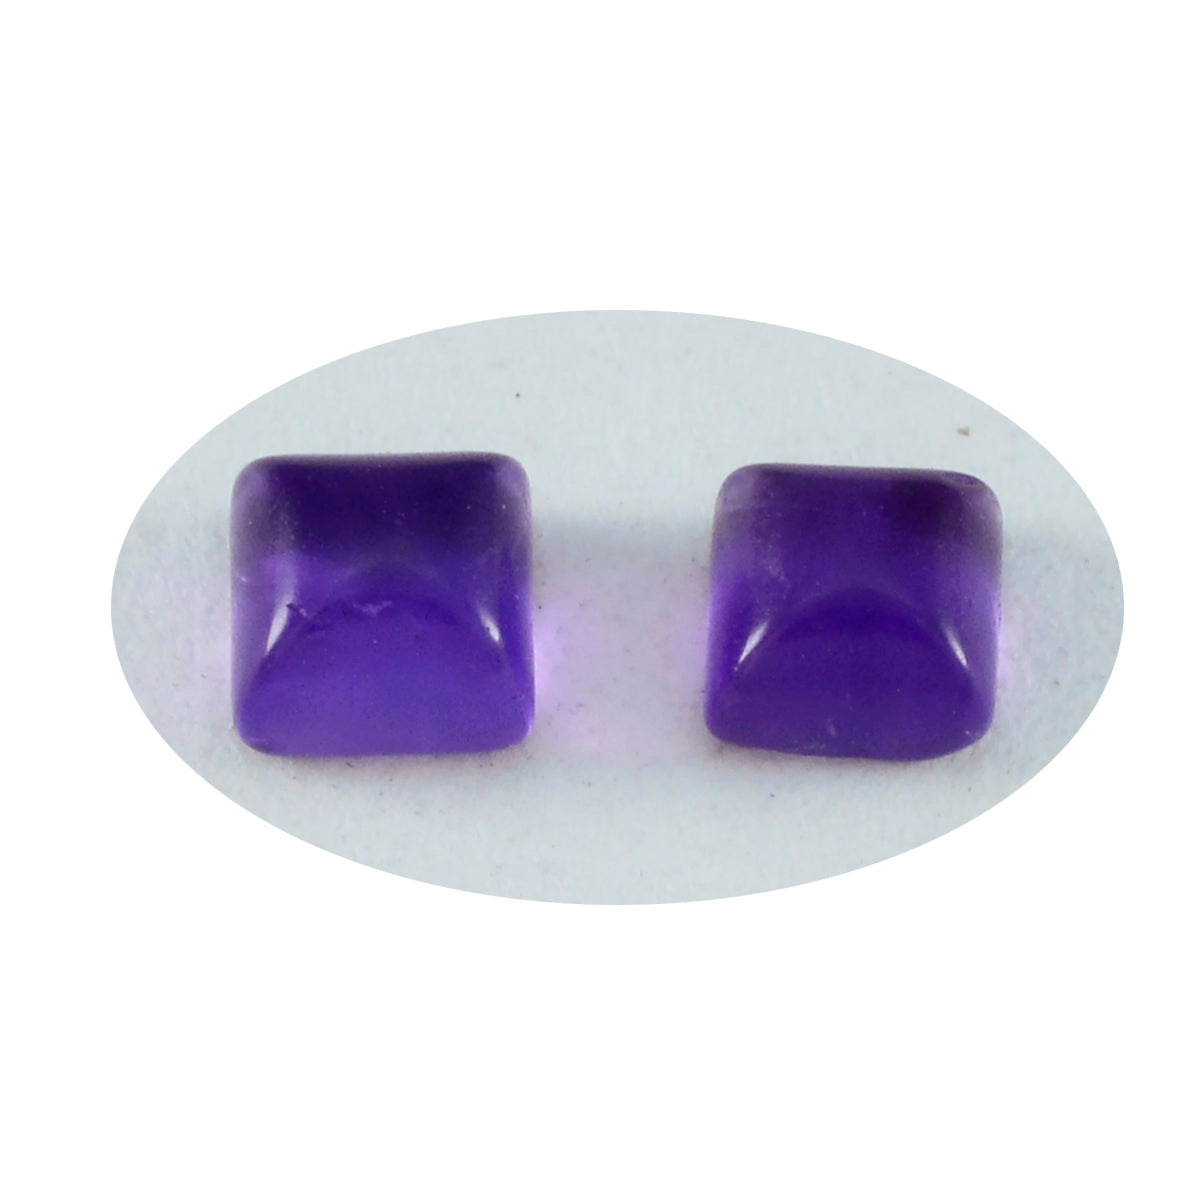 Riyogems 1 Stück violetter Amethyst-Cabochon, 7 x 7 mm, quadratische Form, attraktiver Qualitätsstein